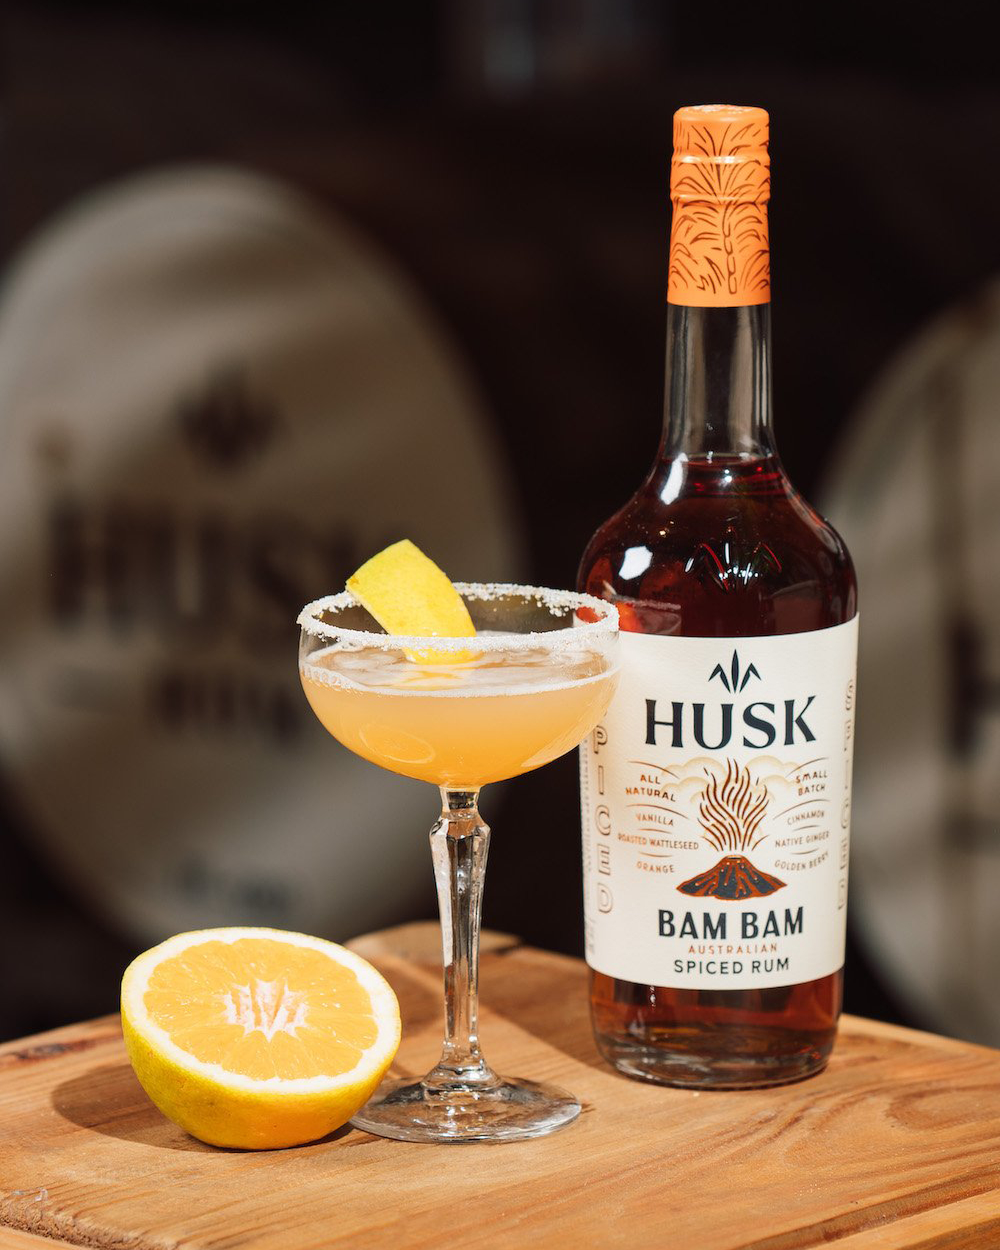 Husk Distillers Spiced Bam Bam Rum 700ml